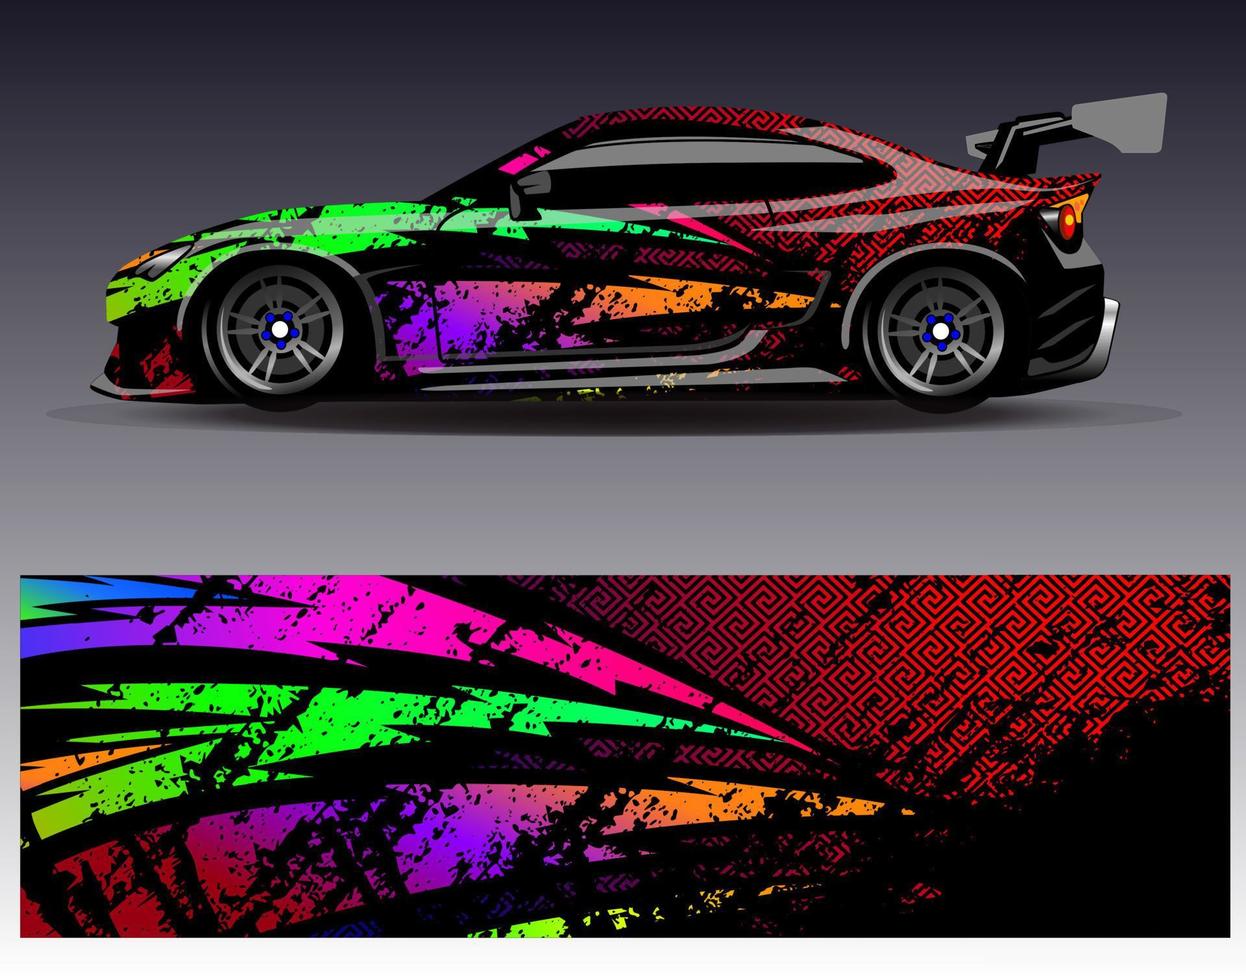 Auto-Wrap-Design-Vektor. grafische abstrakte Streifen-Rennhintergrund-Kit-Designs für Wrap-Fahrzeug-Rennwagen-Rallye-Abenteuer und Lackierungen vektor